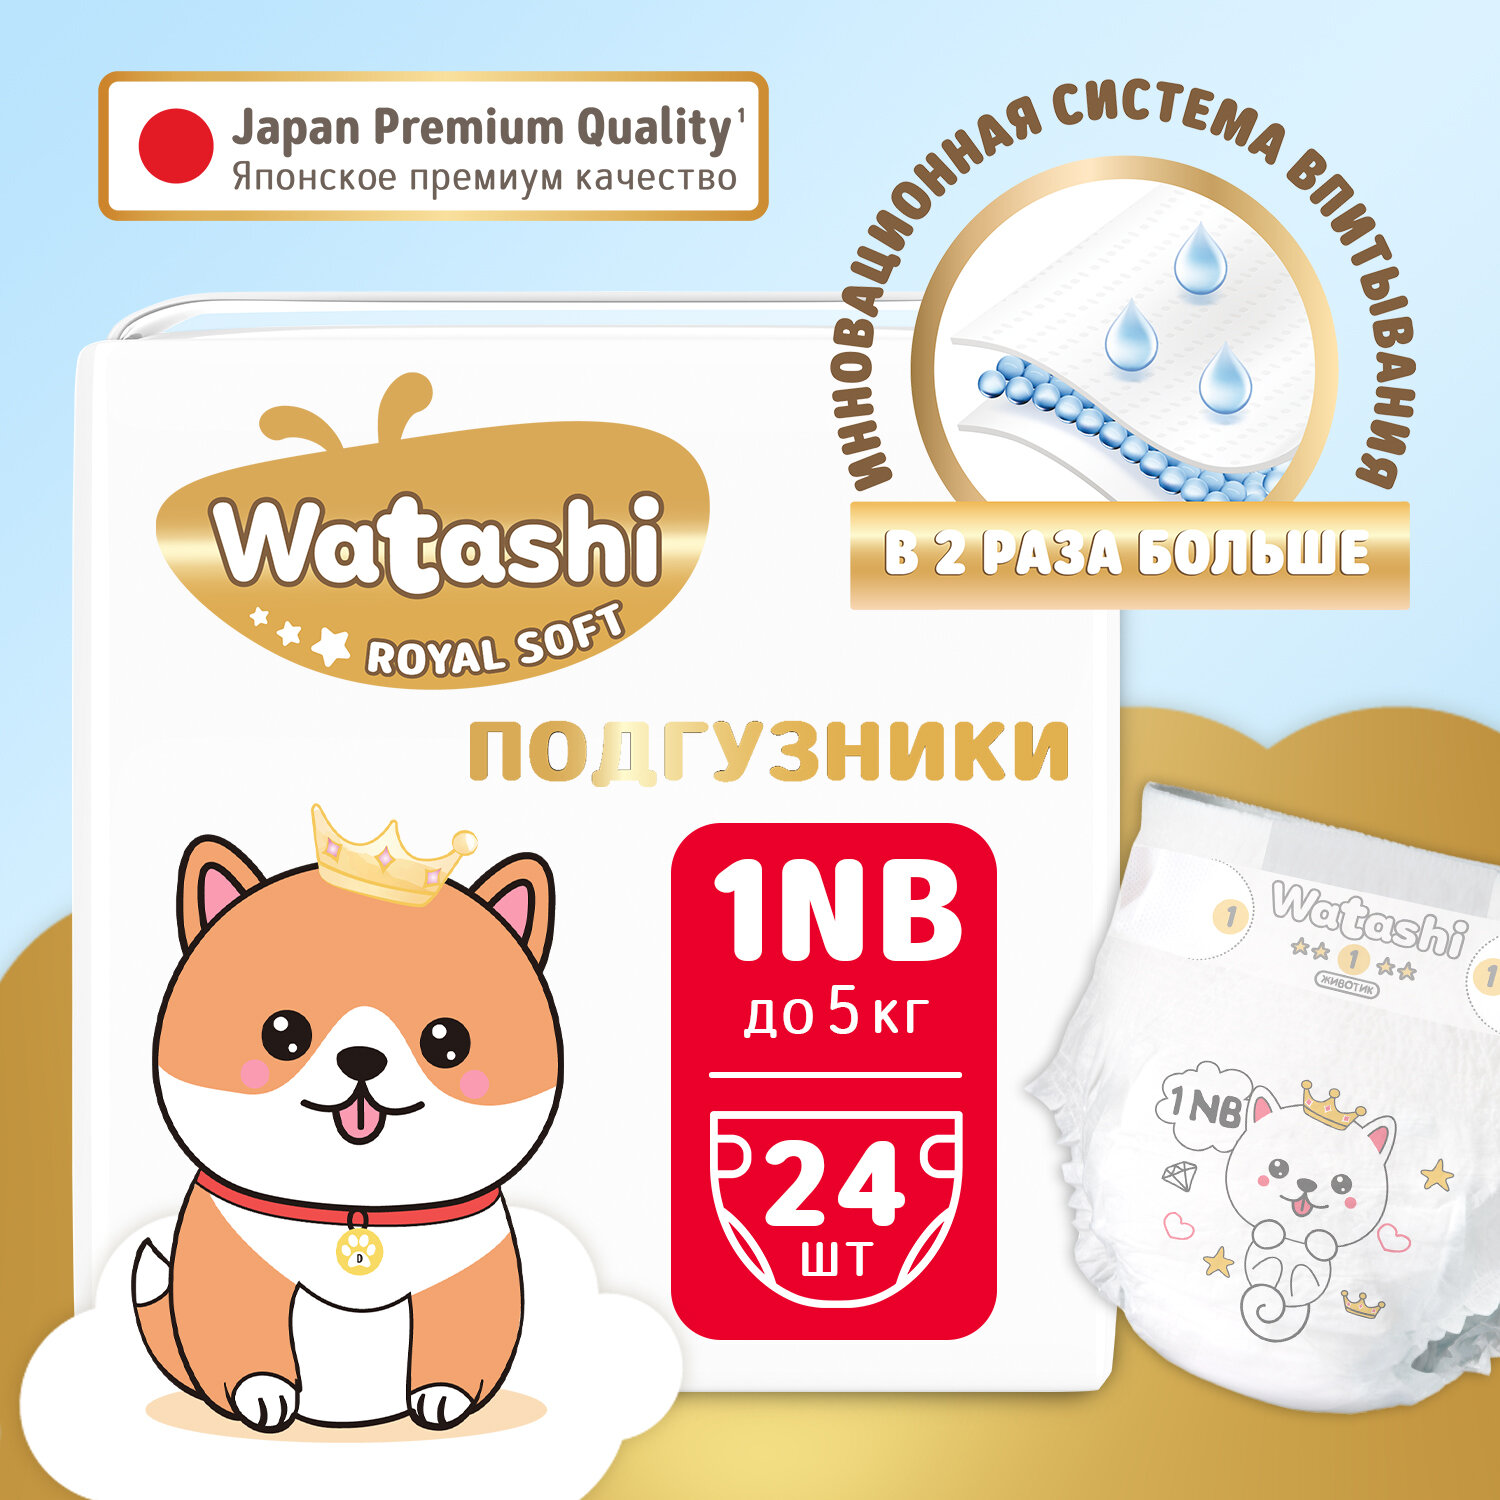 WATASHI Royal Soft Детские одноразовые подгузники 1/NB до 5 кг small-pack 24шт /4